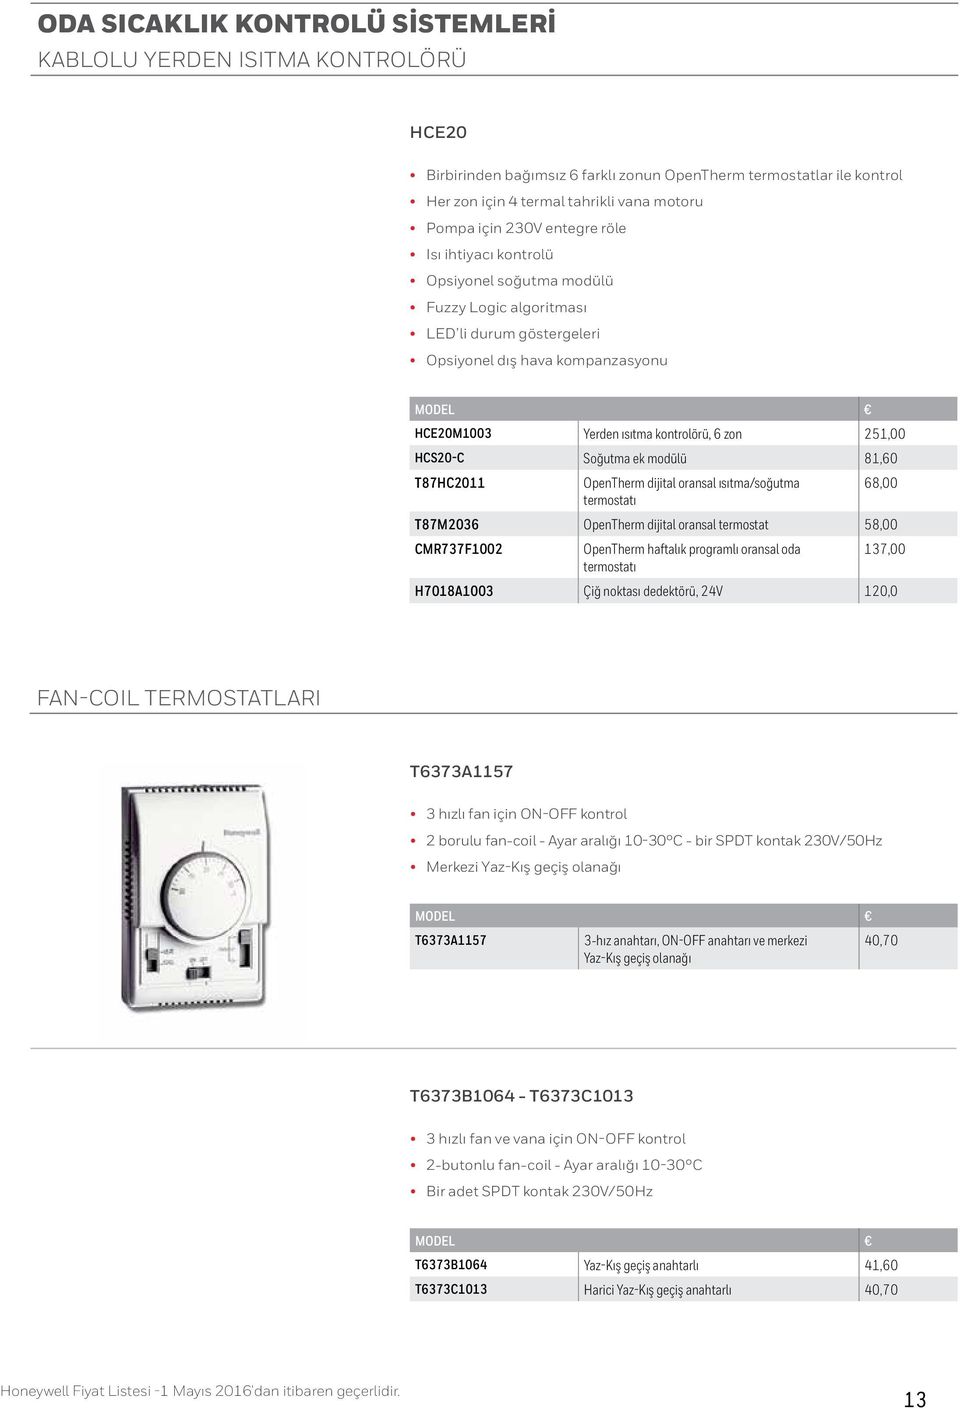 HCS20-C Soğutma ek modülü 81,60 T87HC2011 OpenTherm dijital oransal ısıtma/soğutma 68,00 termostatı T87M2036 OpenTherm dijital oransal termostat 58,00 CMR737F1002 OpenTherm haftalık programlı oransal